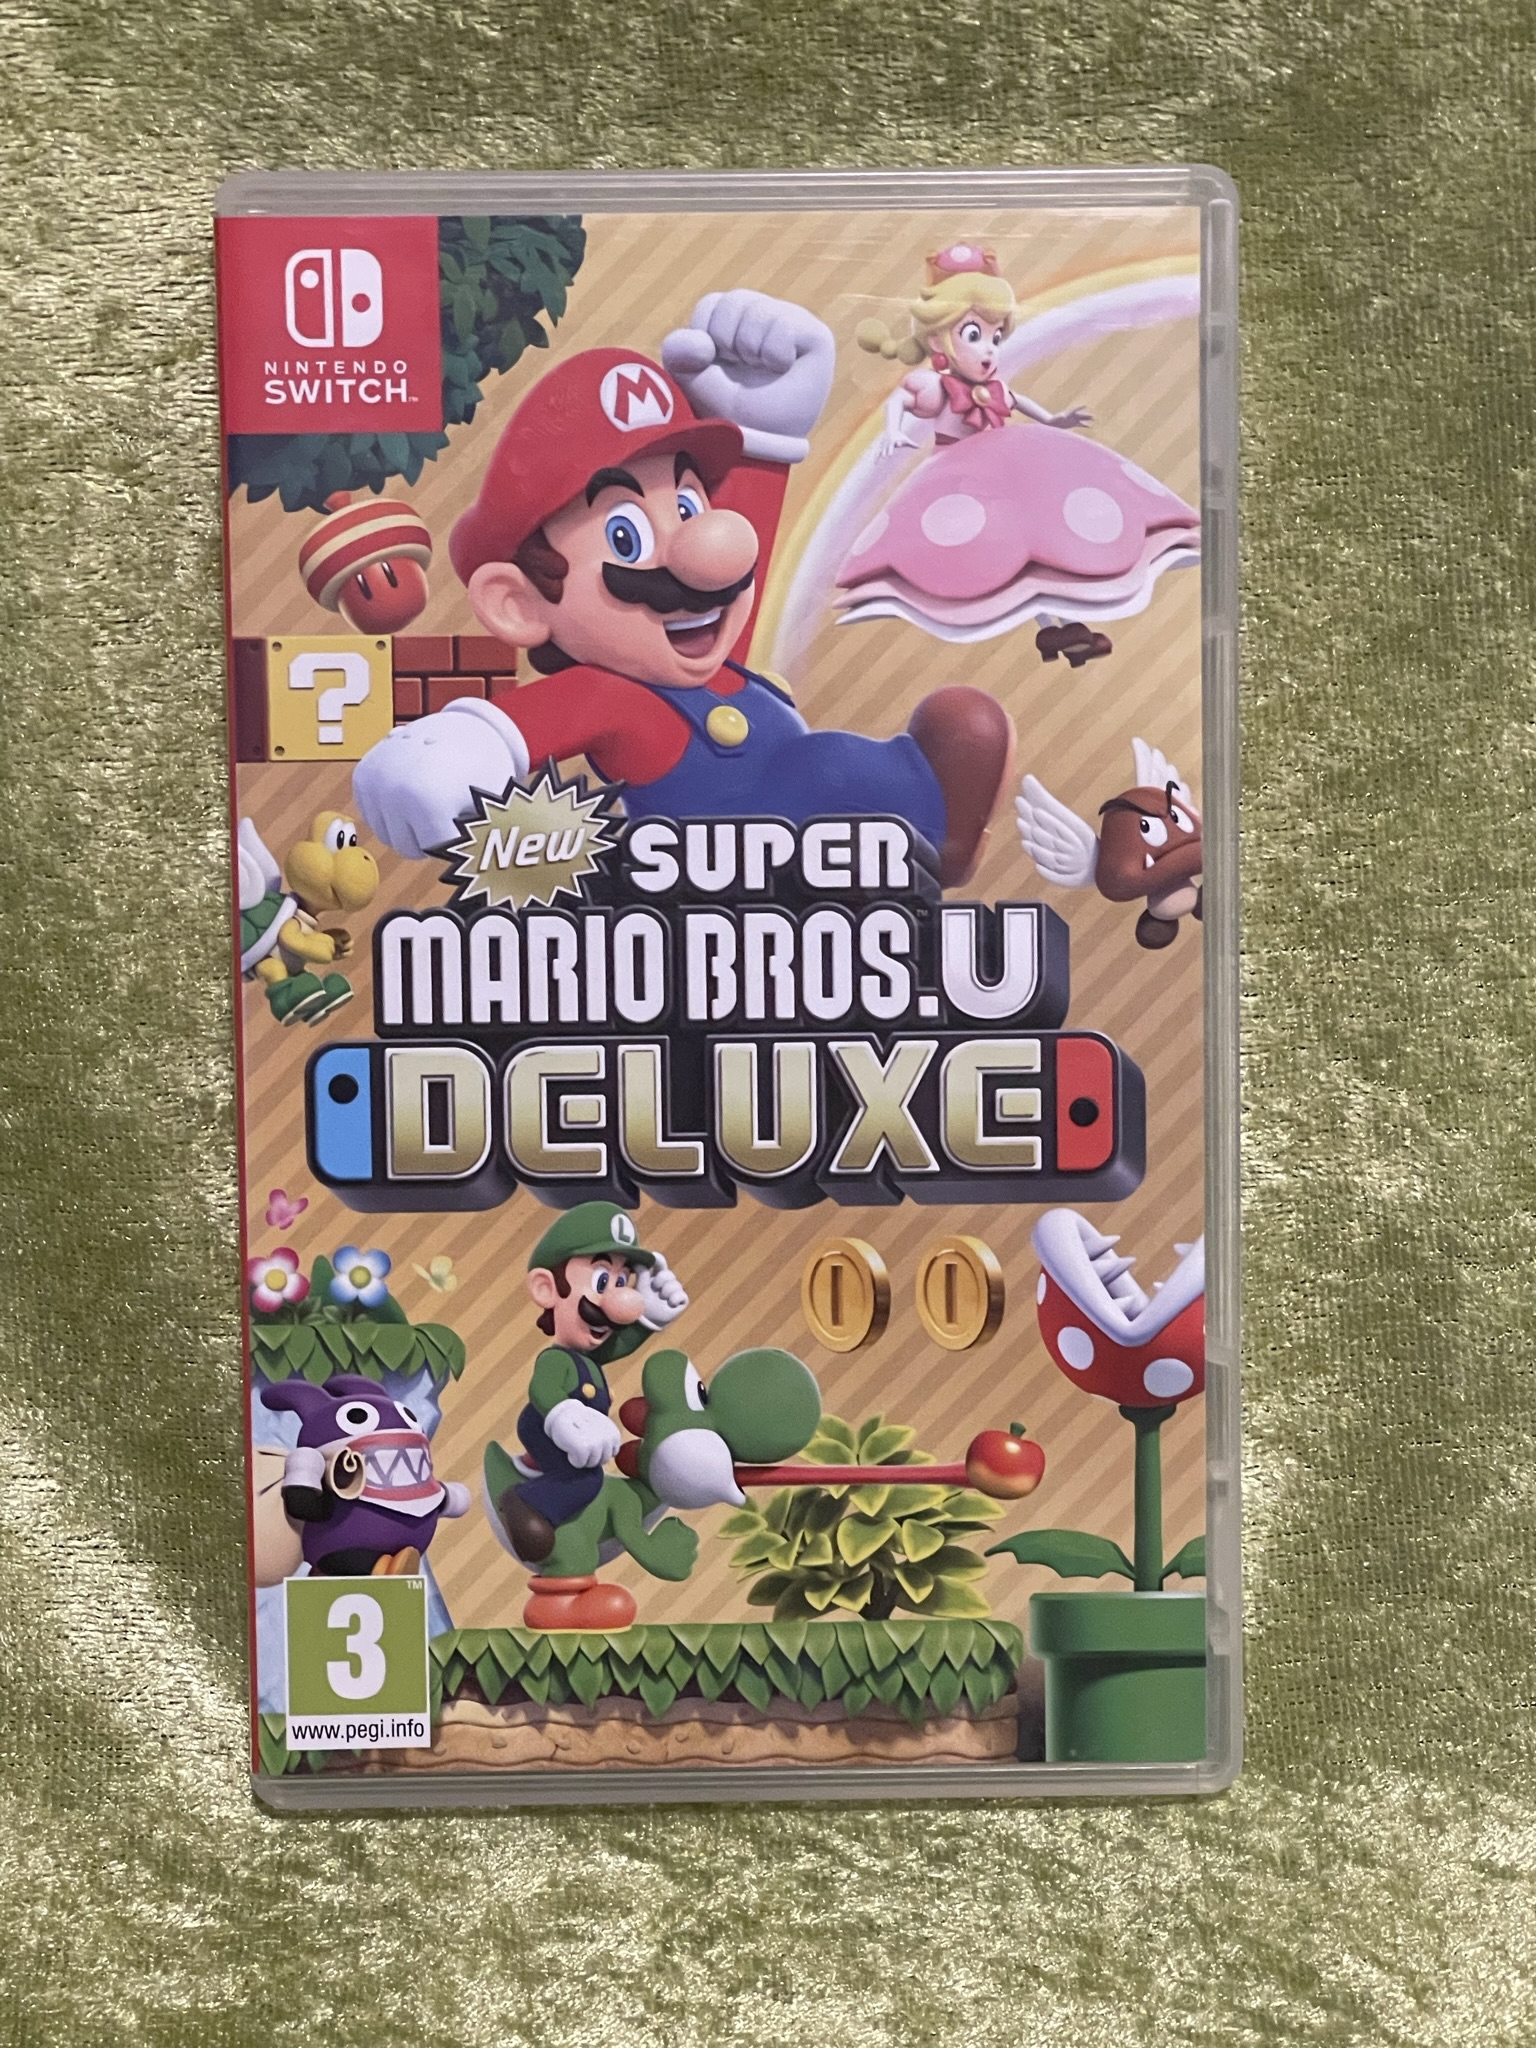 Super Mario Bros.U Deluxe